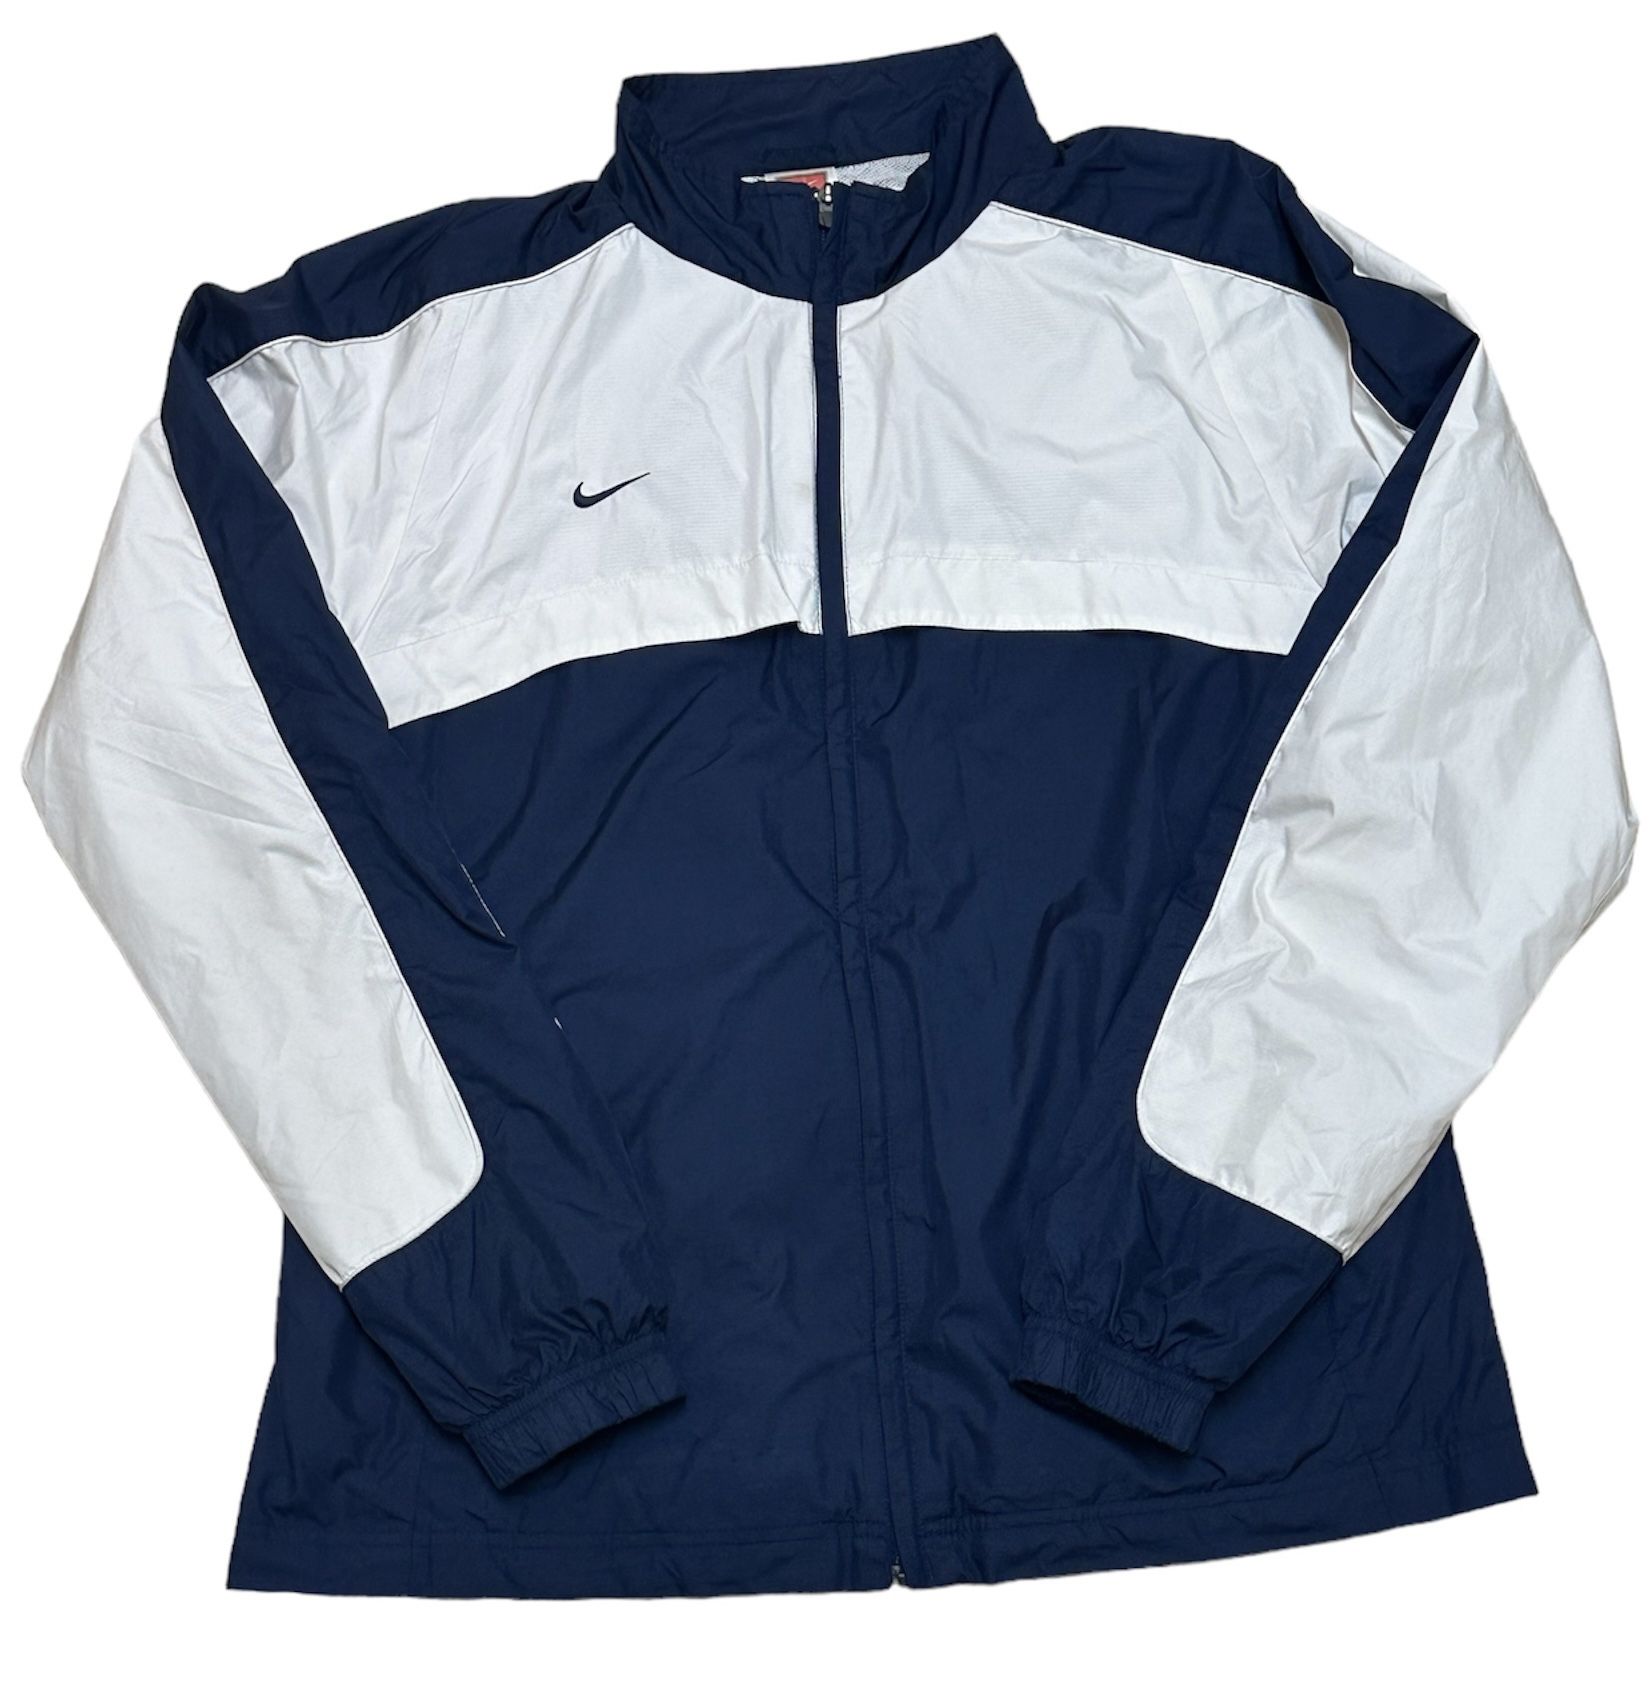 Nike Team Women’s USA Windbreaker White Blue Olympics Jacket Size M (Read Description)